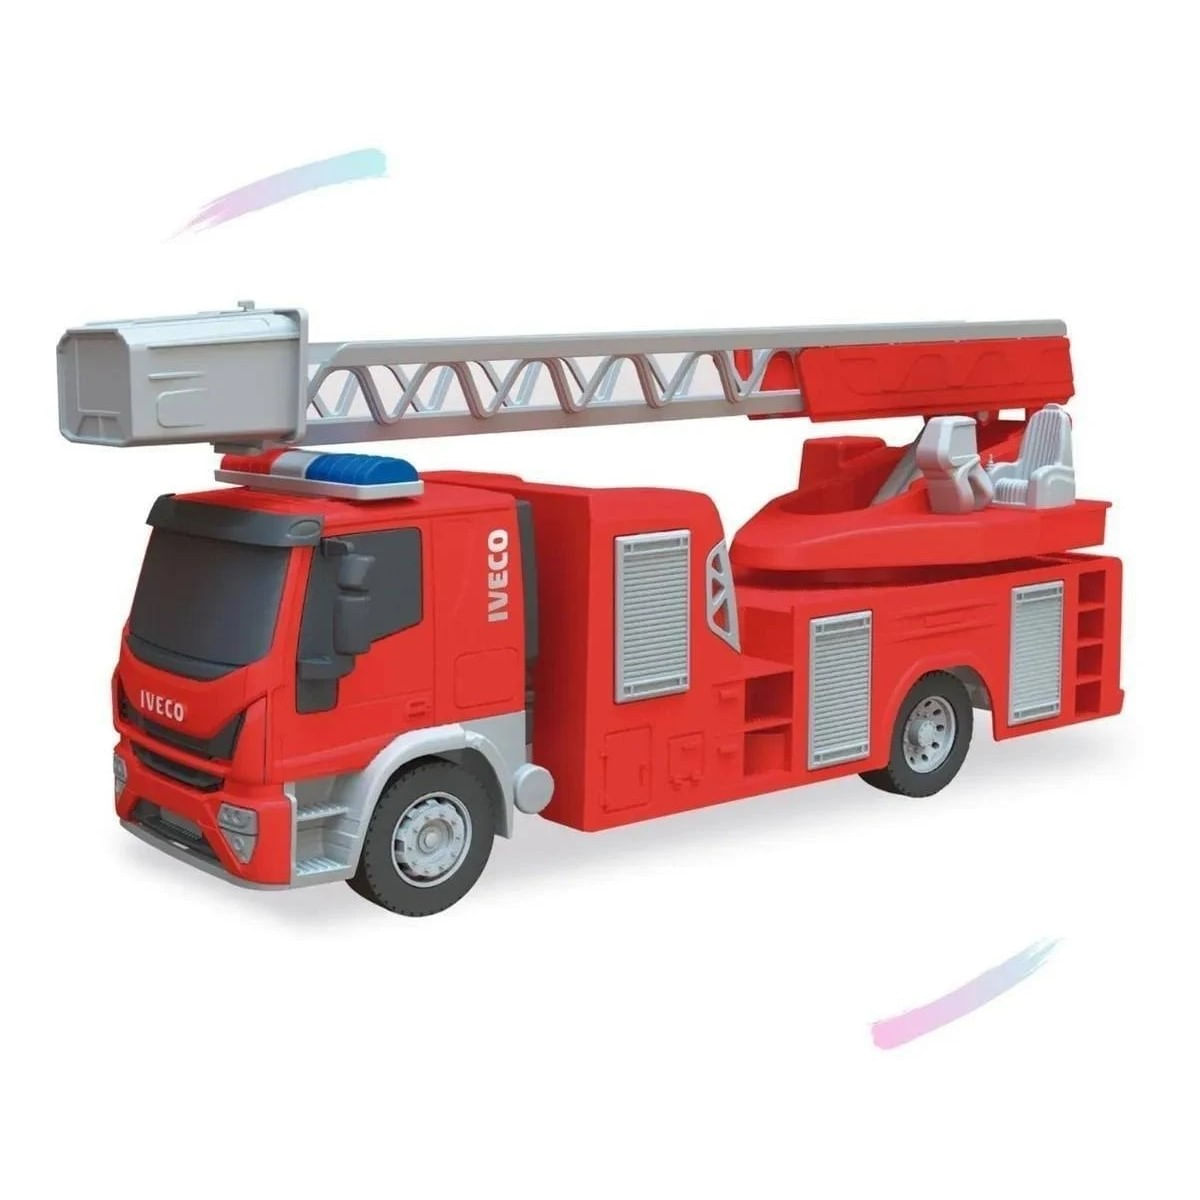 Trucks de brinquedo da Iveco conquistam o público infantil